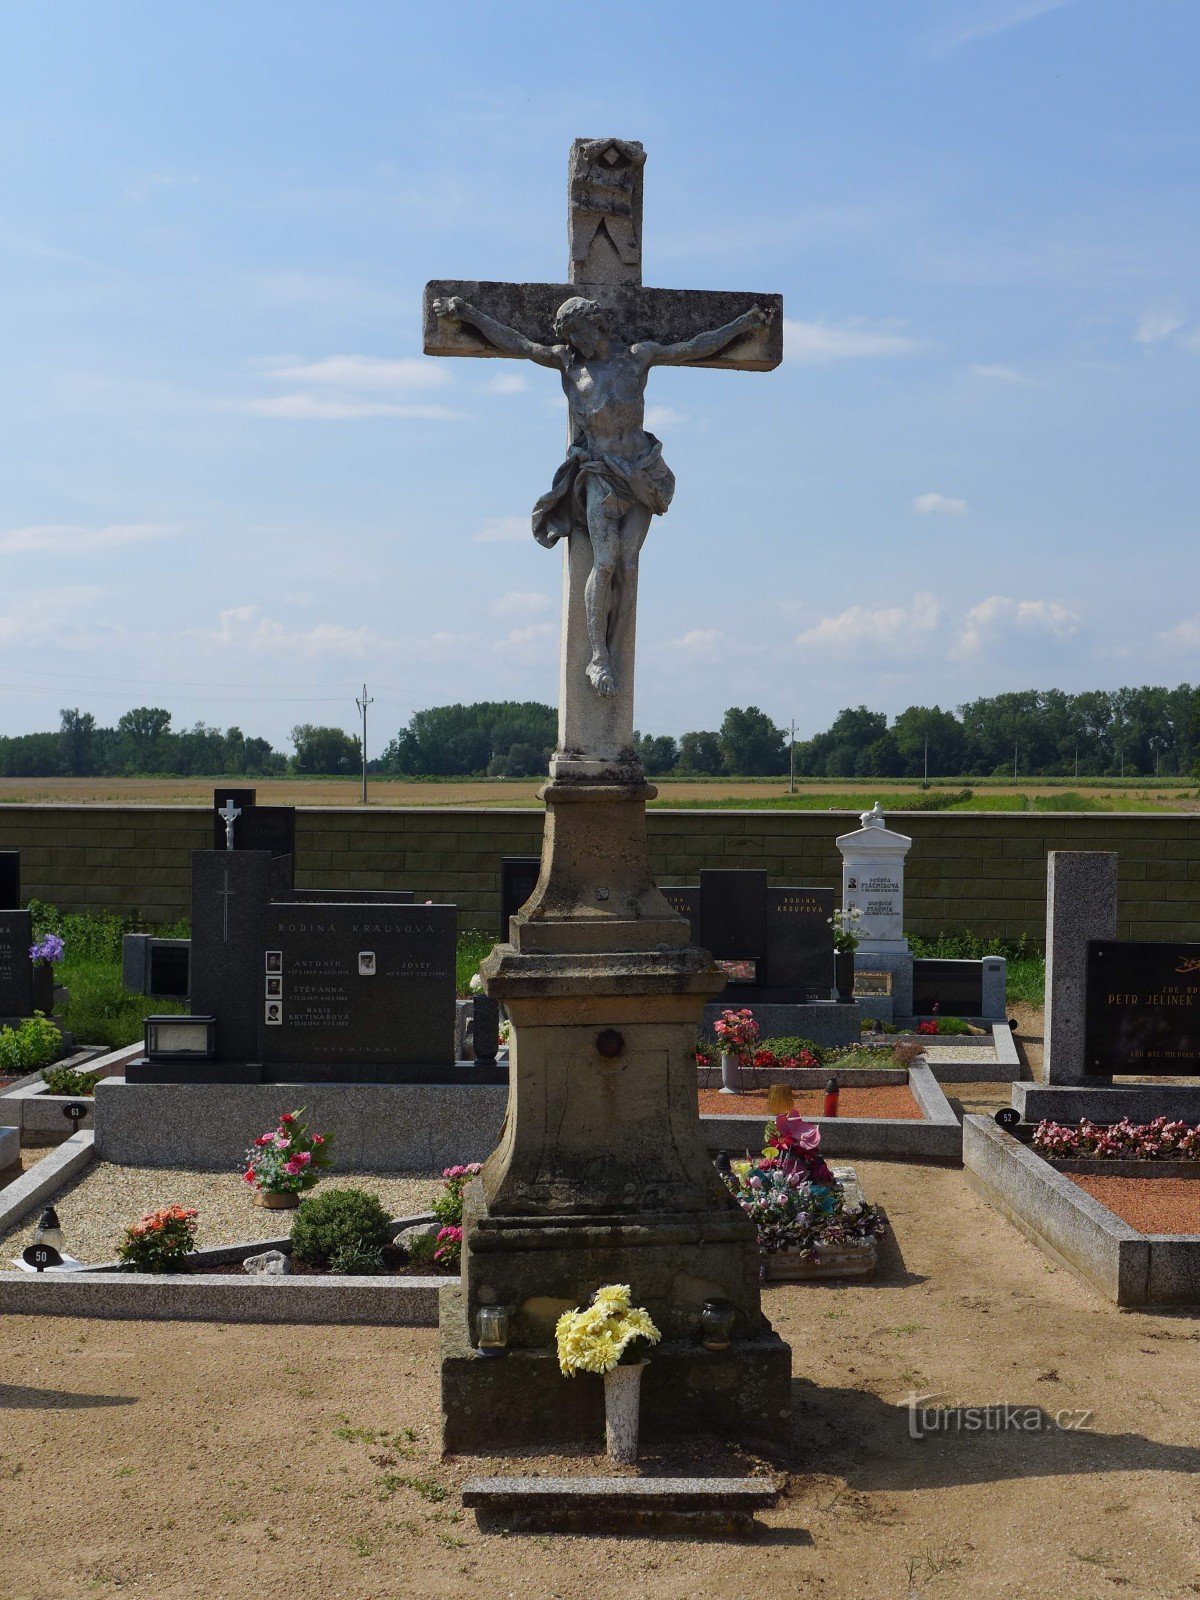 Nemčičky - centralny krzyż na cmentarzu